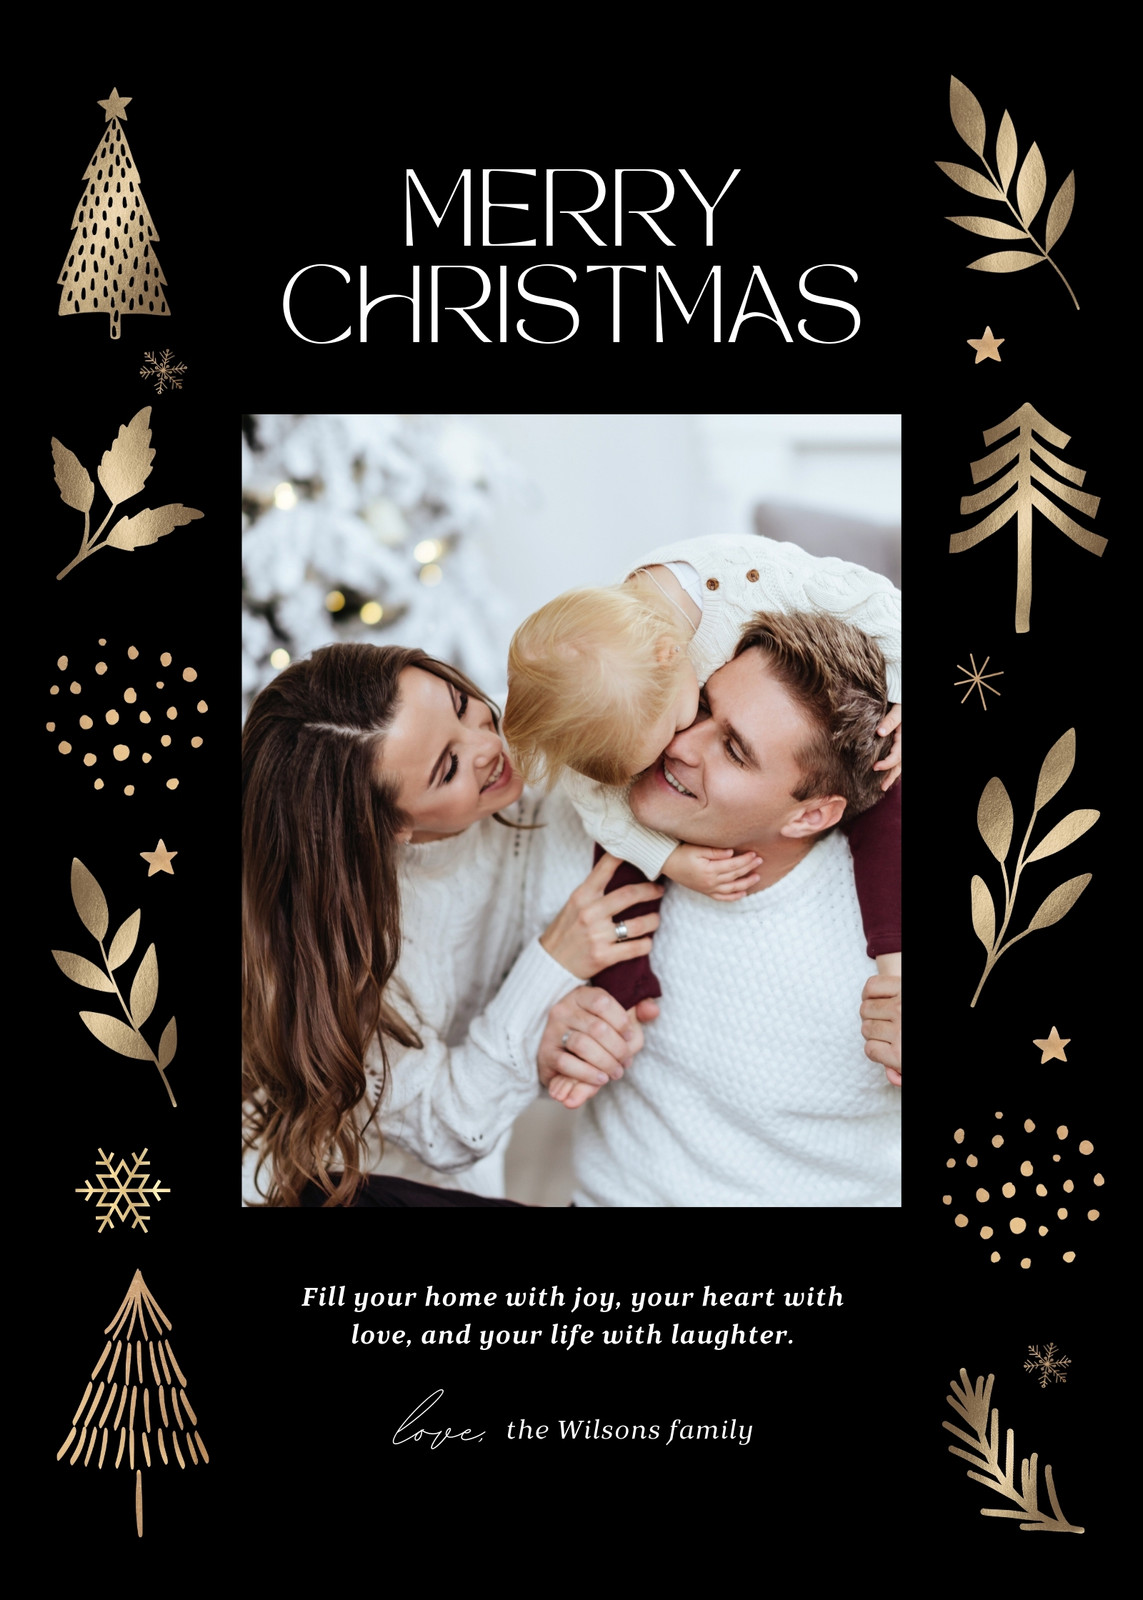 Free custom printable Christmas card templates